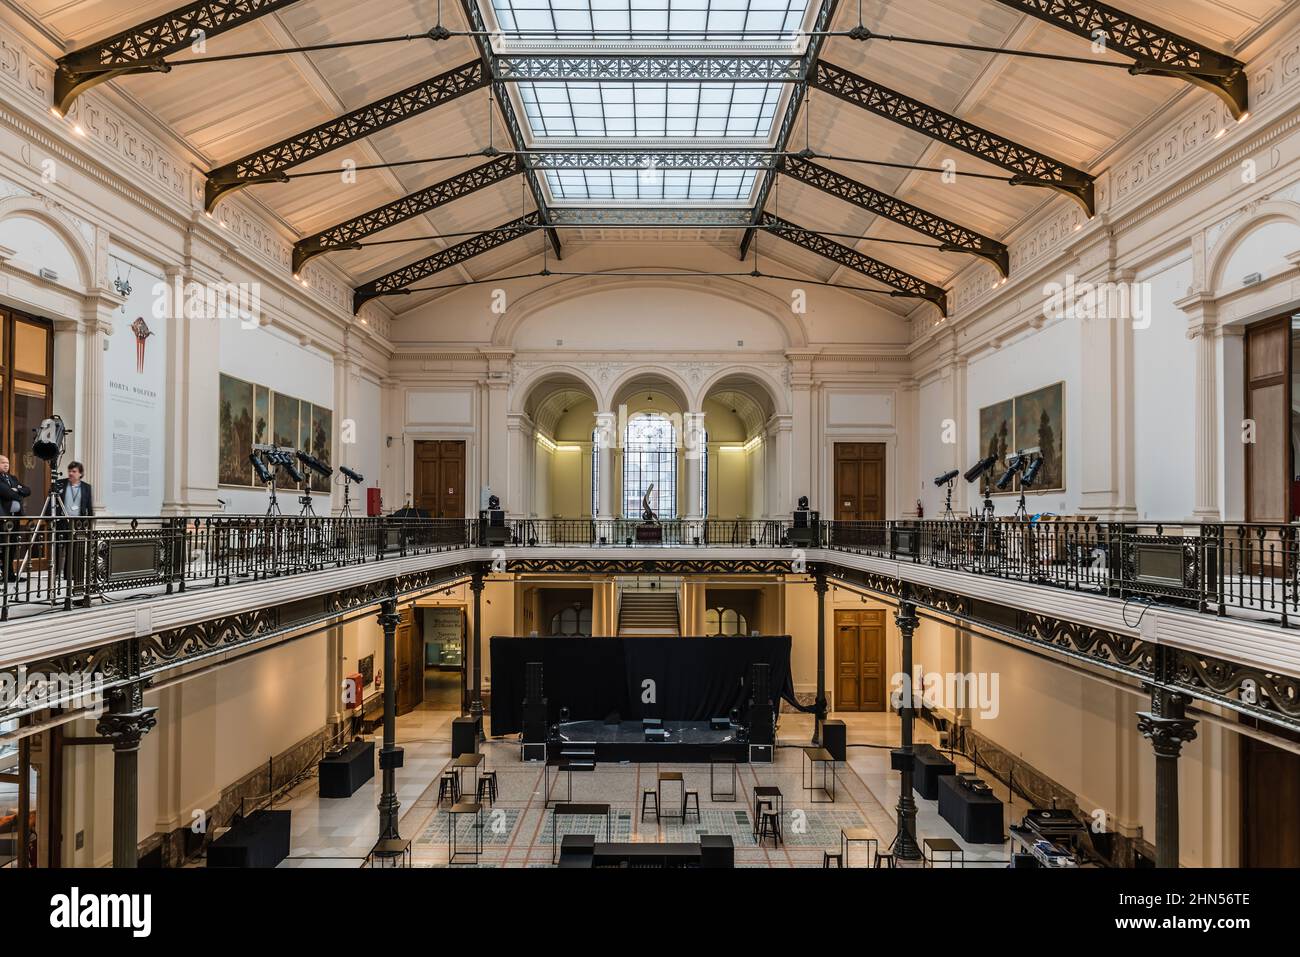 Bruxelles, Belgique - 11 11 2018 : vue intérieure de la salle principale du musée royal d'Art et d'Histoire Banque D'Images